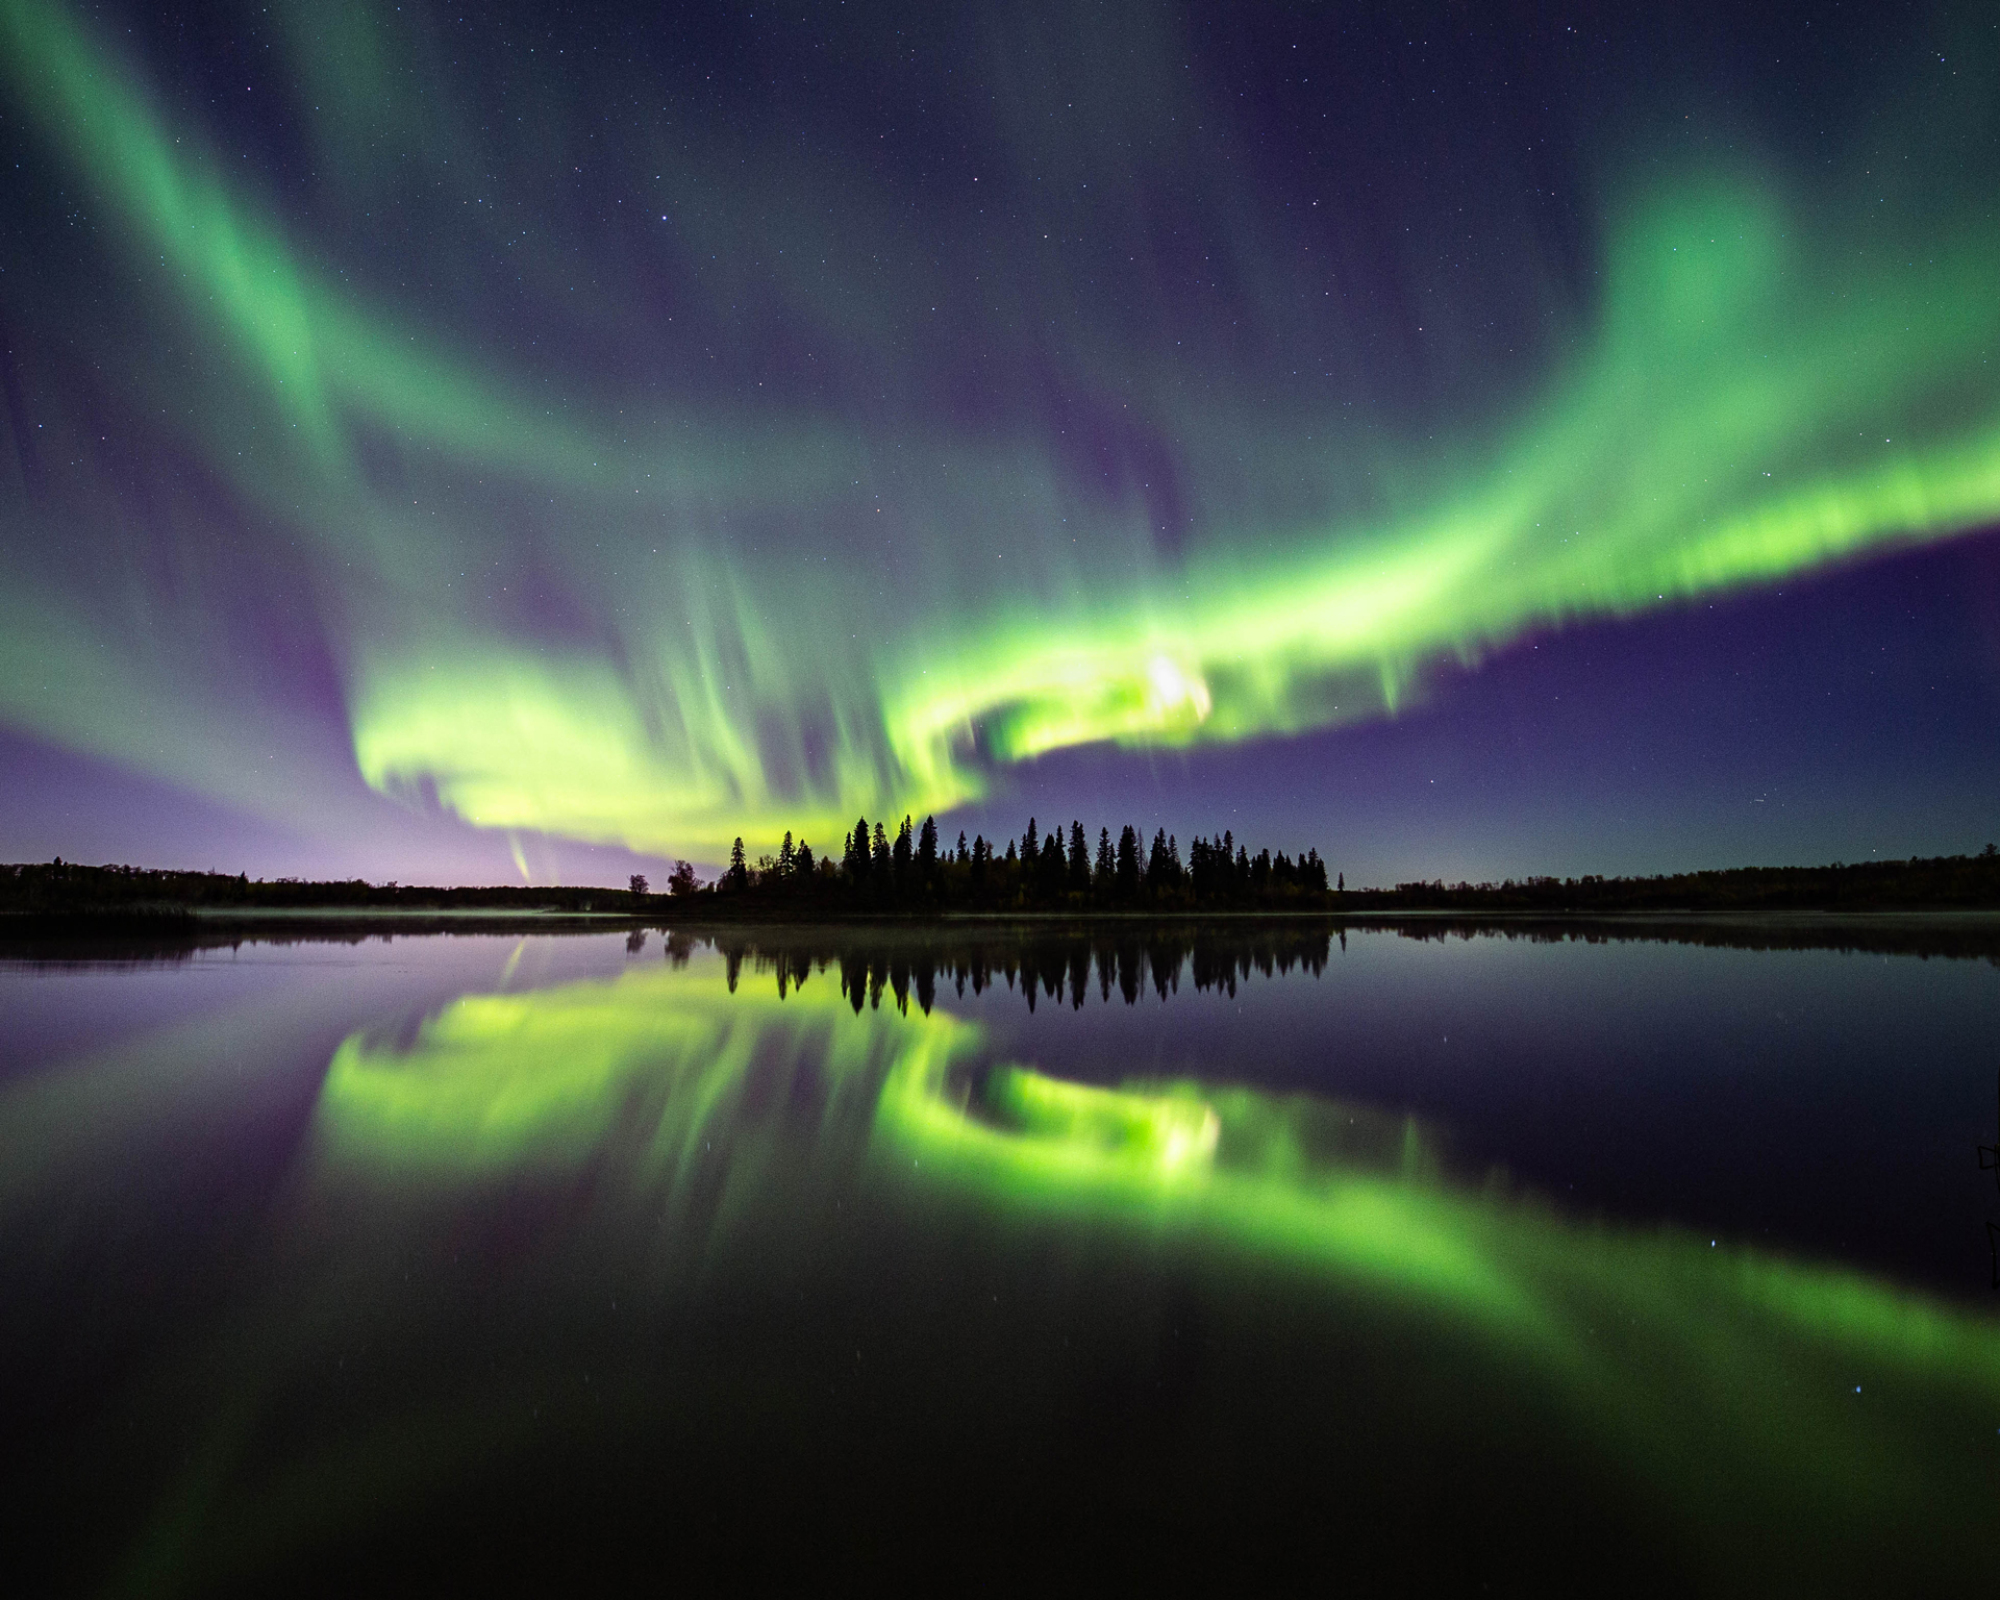 Les aurores boréales se reflètent dans les eaux calmes d'un lac en Alberta, au Canada.